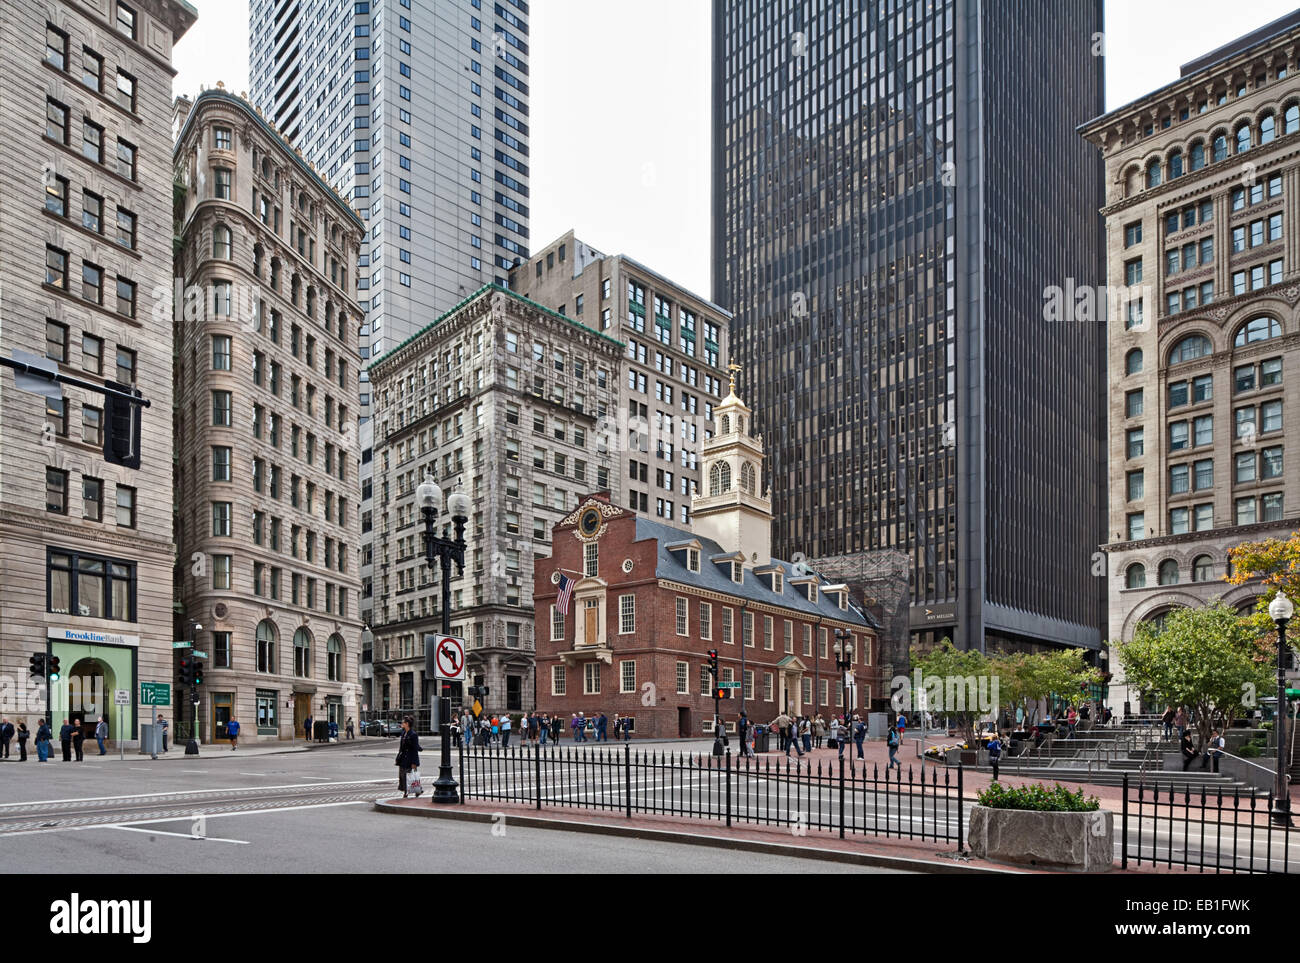 Old State House, Boston, le plus ancien édifice public de Boston, Massachusetts. Banque D'Images